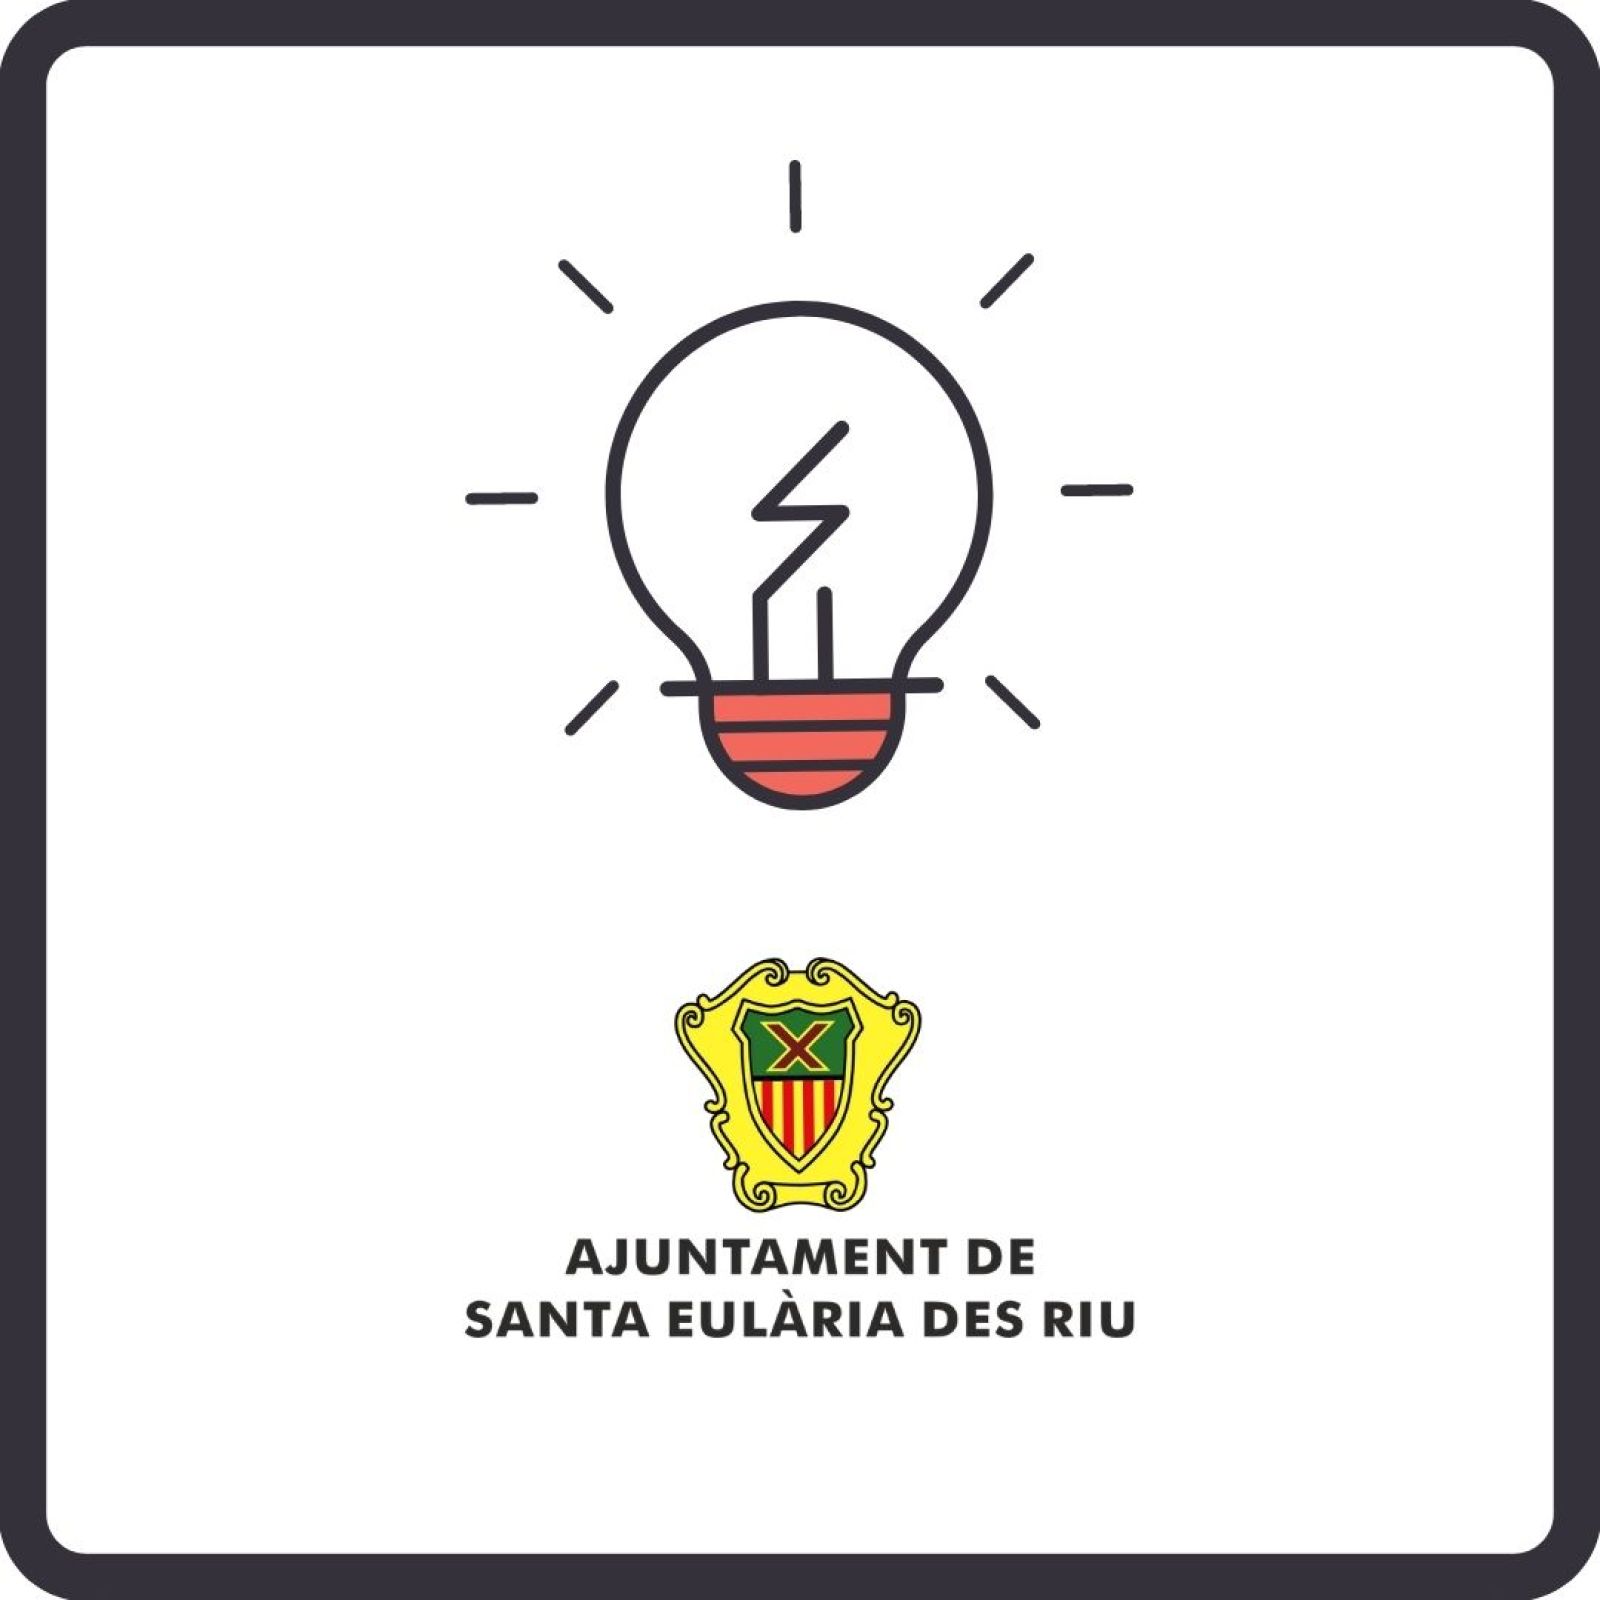 Corte temporal del suministro de energía eléctrica en diferentes zonas de Santa Eulària des Riu el día 11 de mayo.